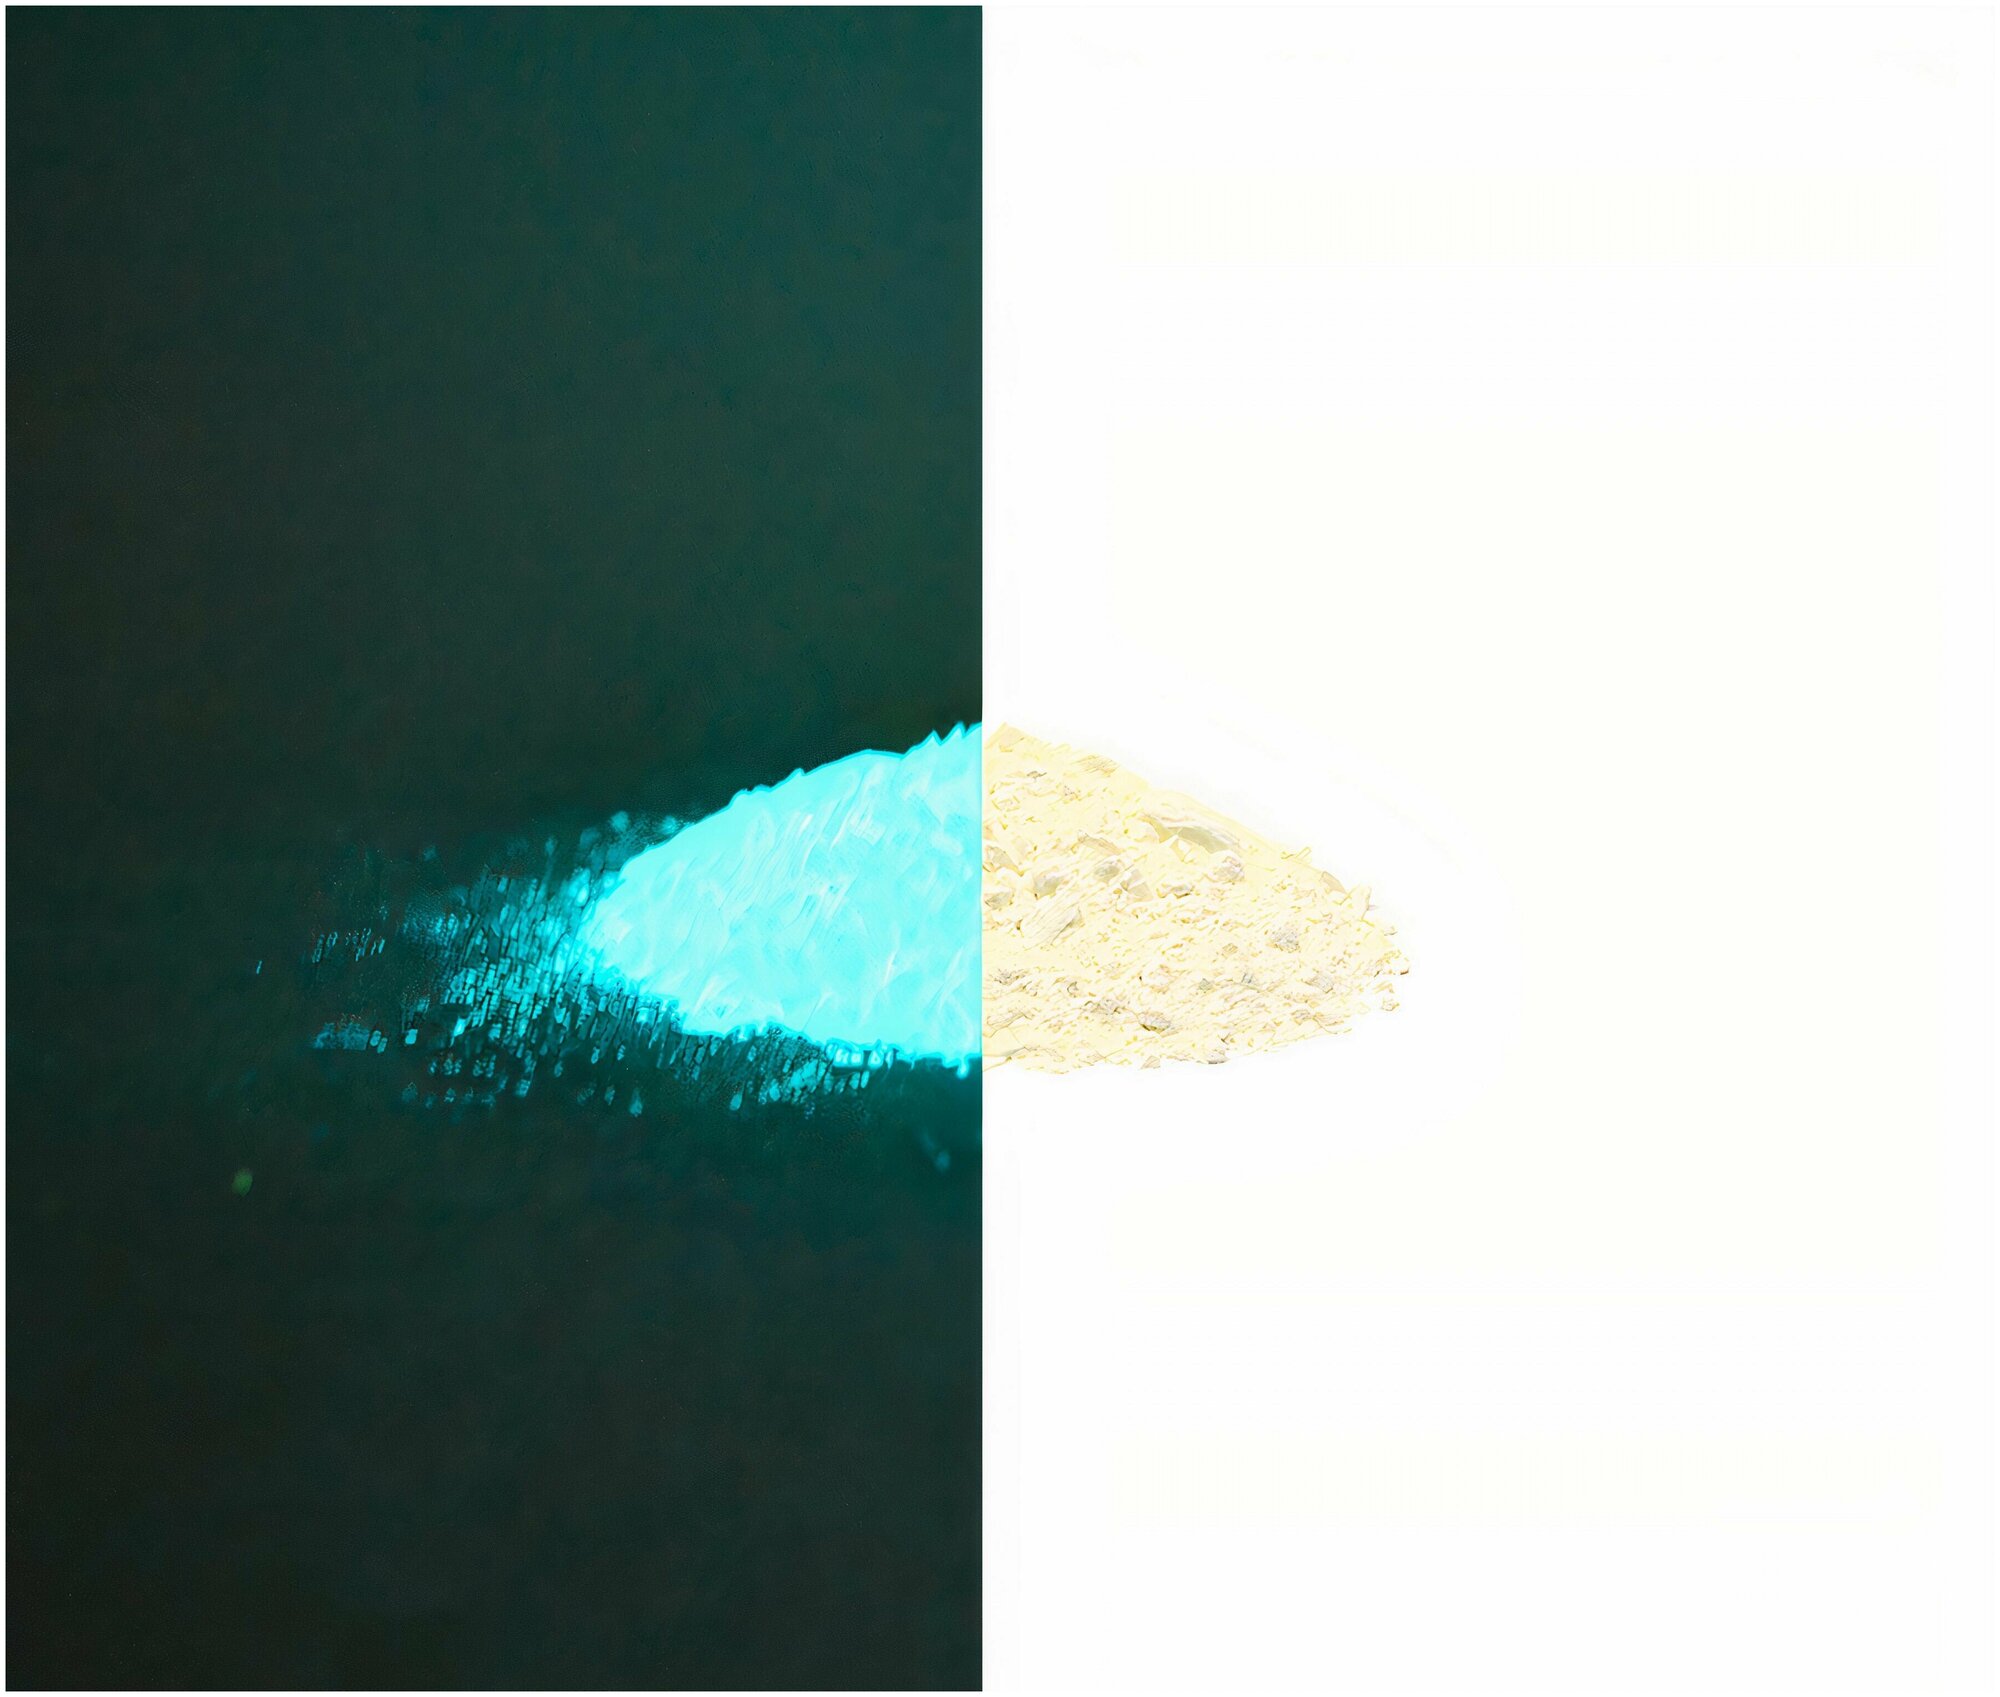 Люминофор порошок MHB-5DW бесцветный влагостойкий свечение бирюзовое / люминесцентный / для акриловой базы, лаков, эпоксидки, творчества - 50 гр